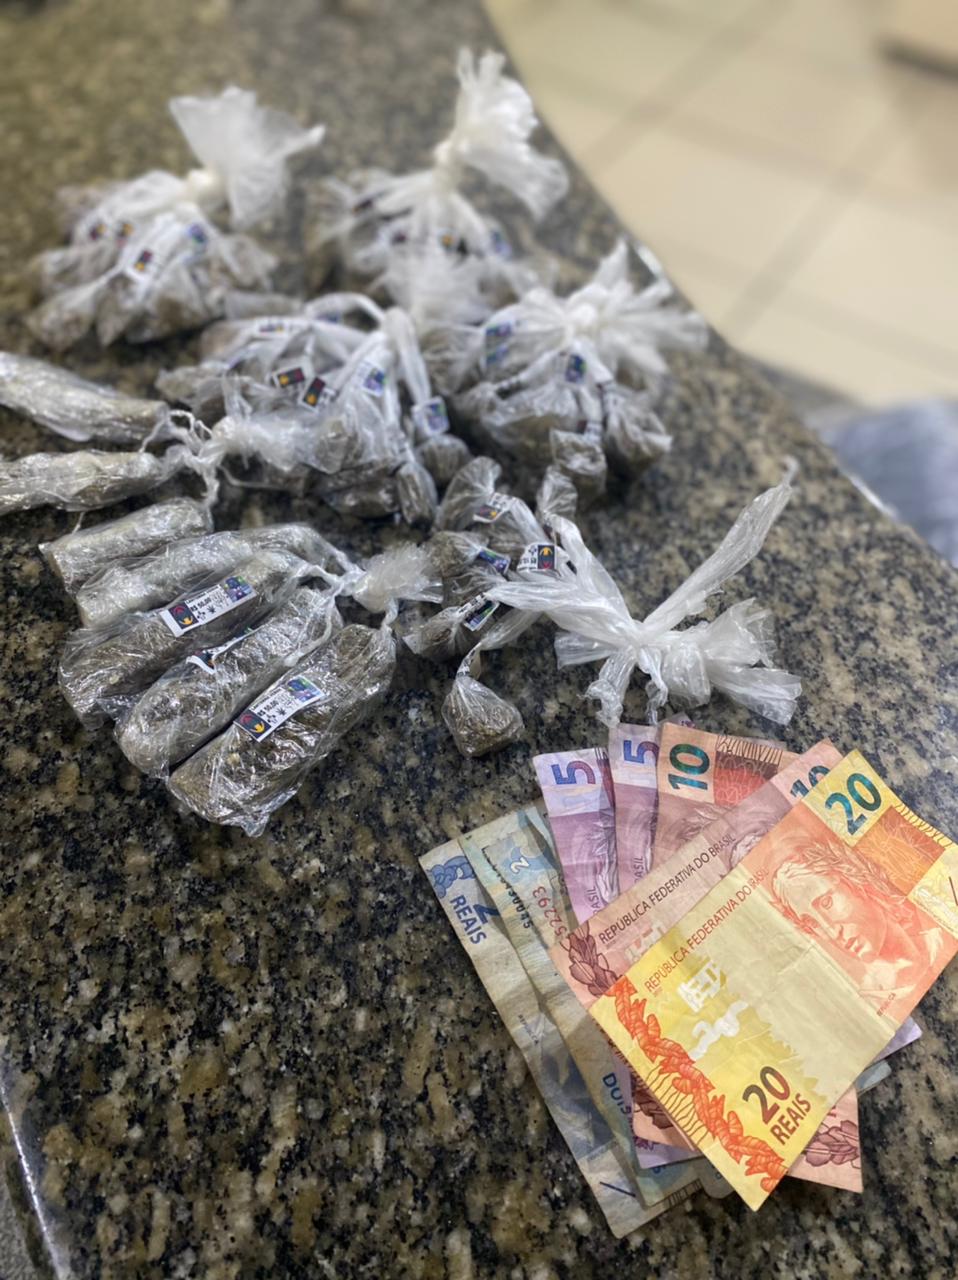 Duas pessoas são detidas por tráfico de drogas em Angra dos Reis